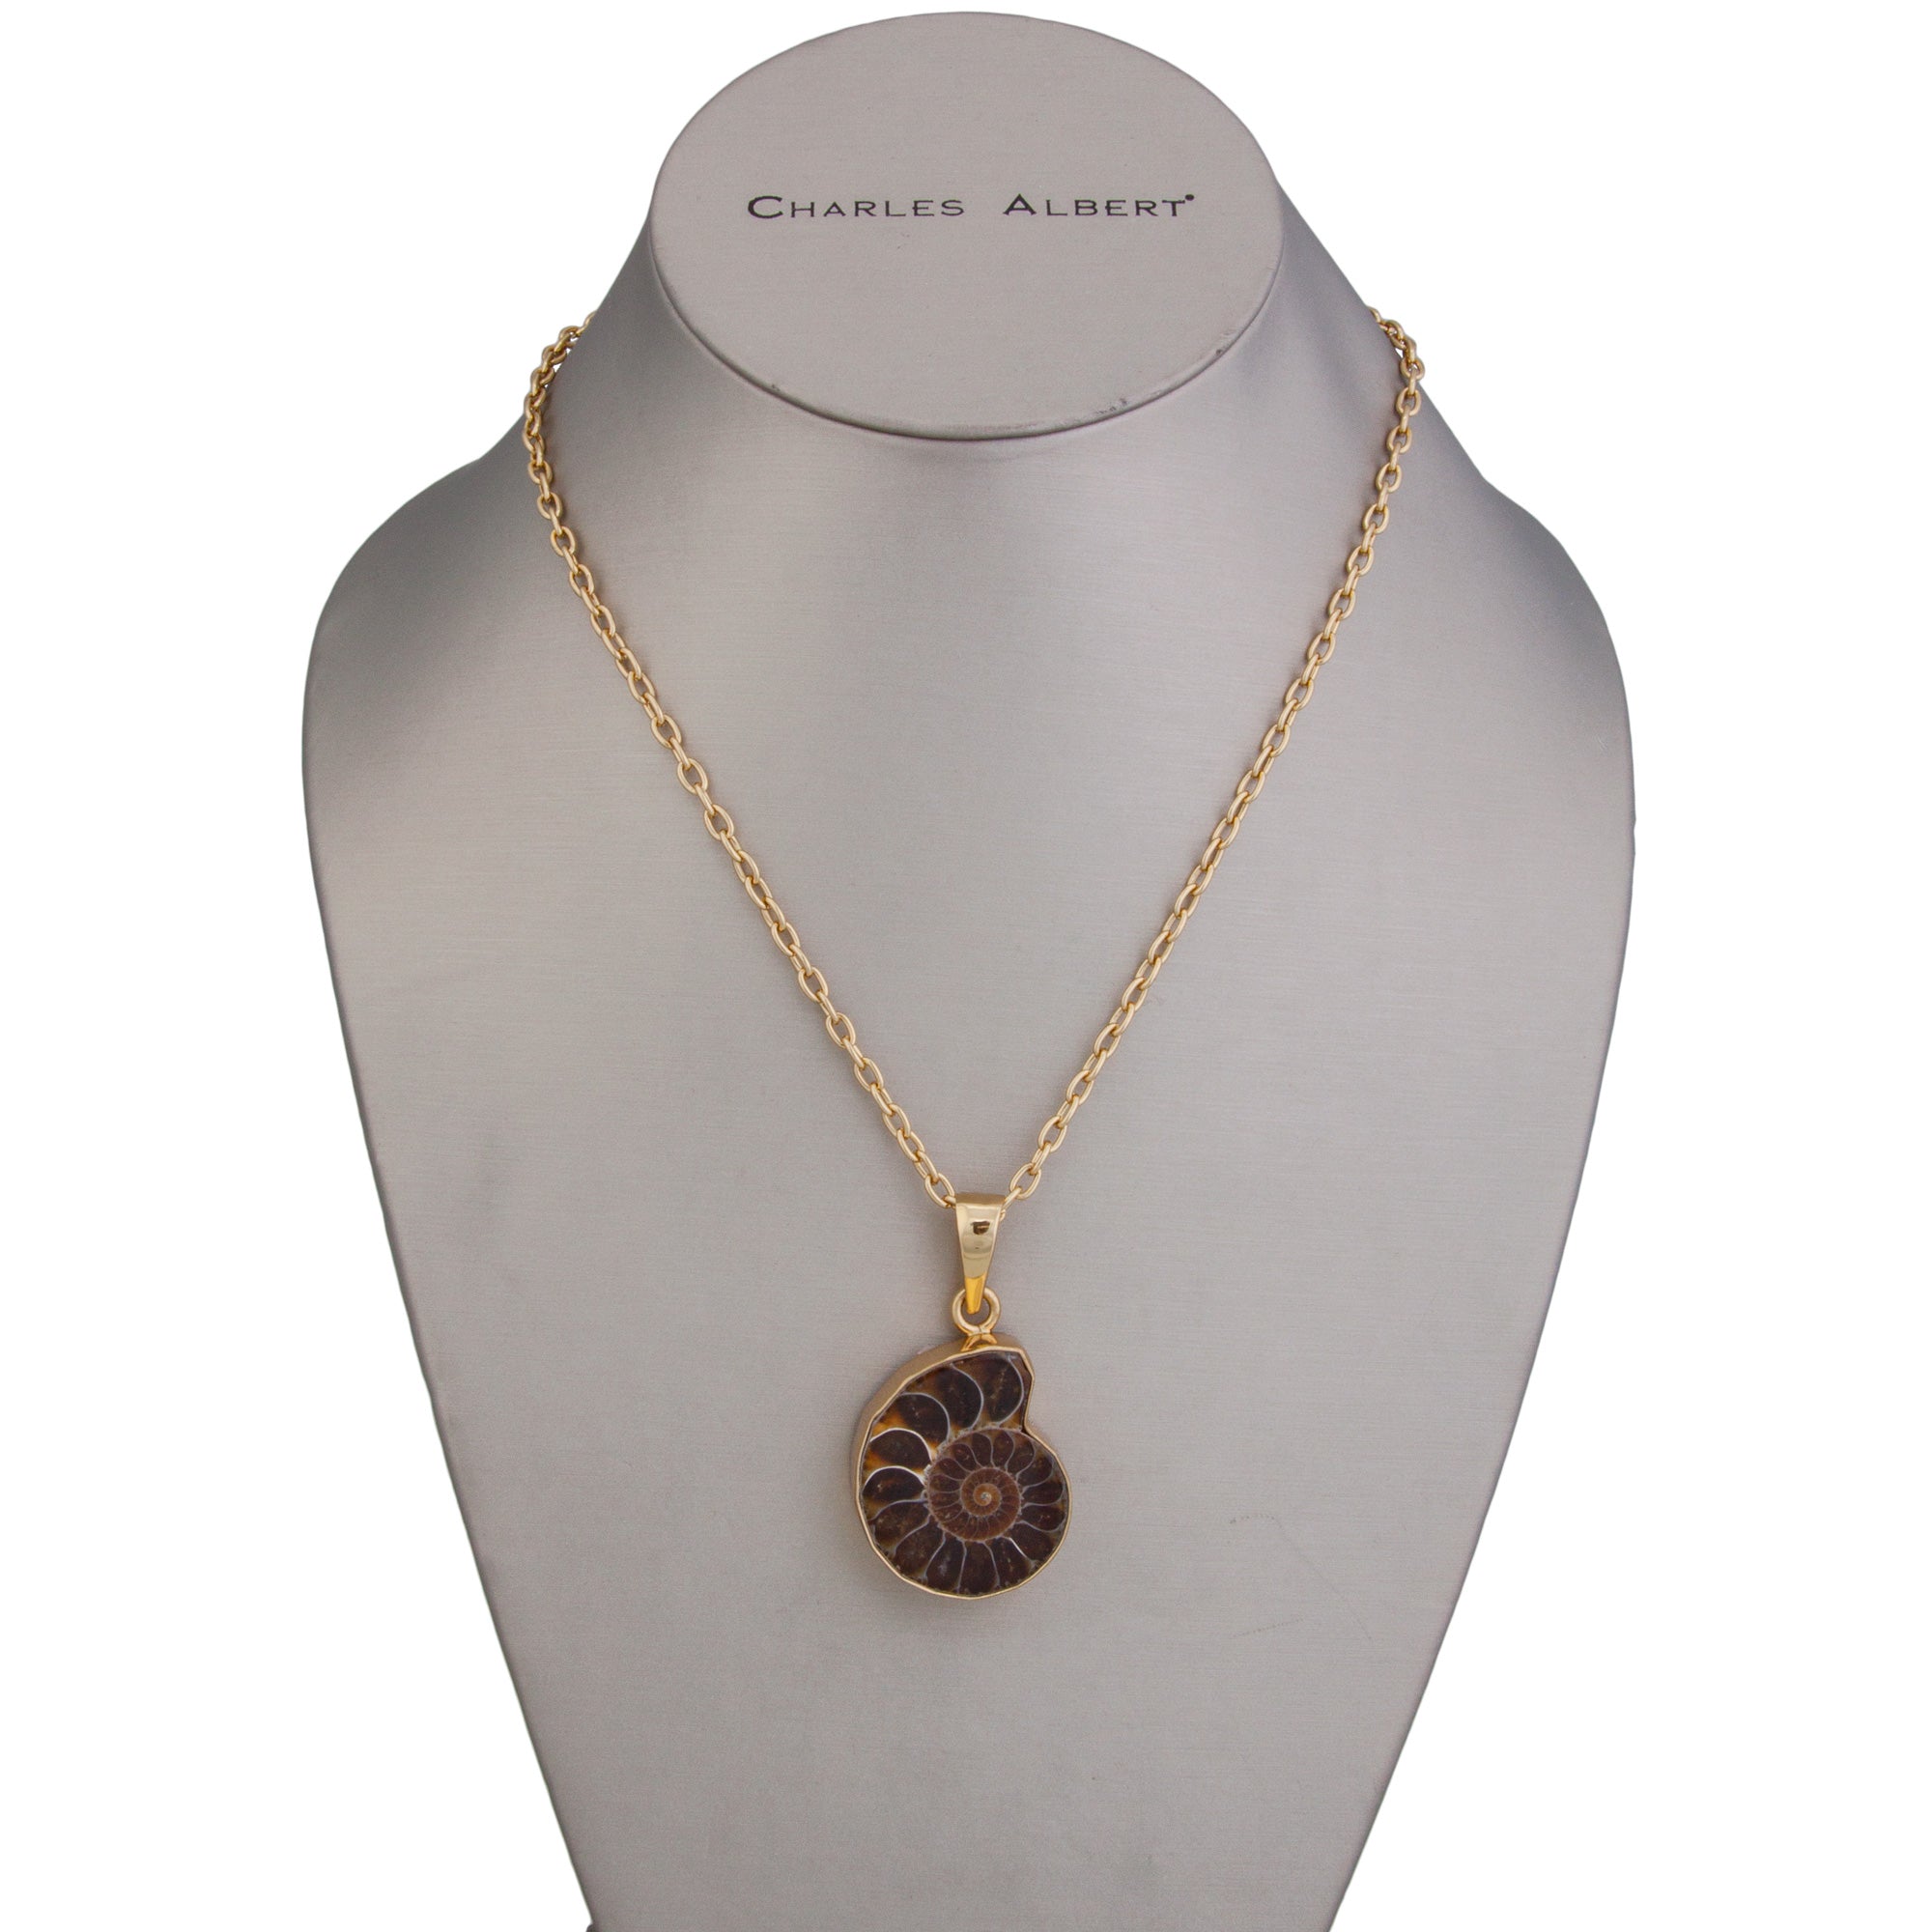 Charles Albert Jewelry - Alchemia Ammonite Pendant - Front View